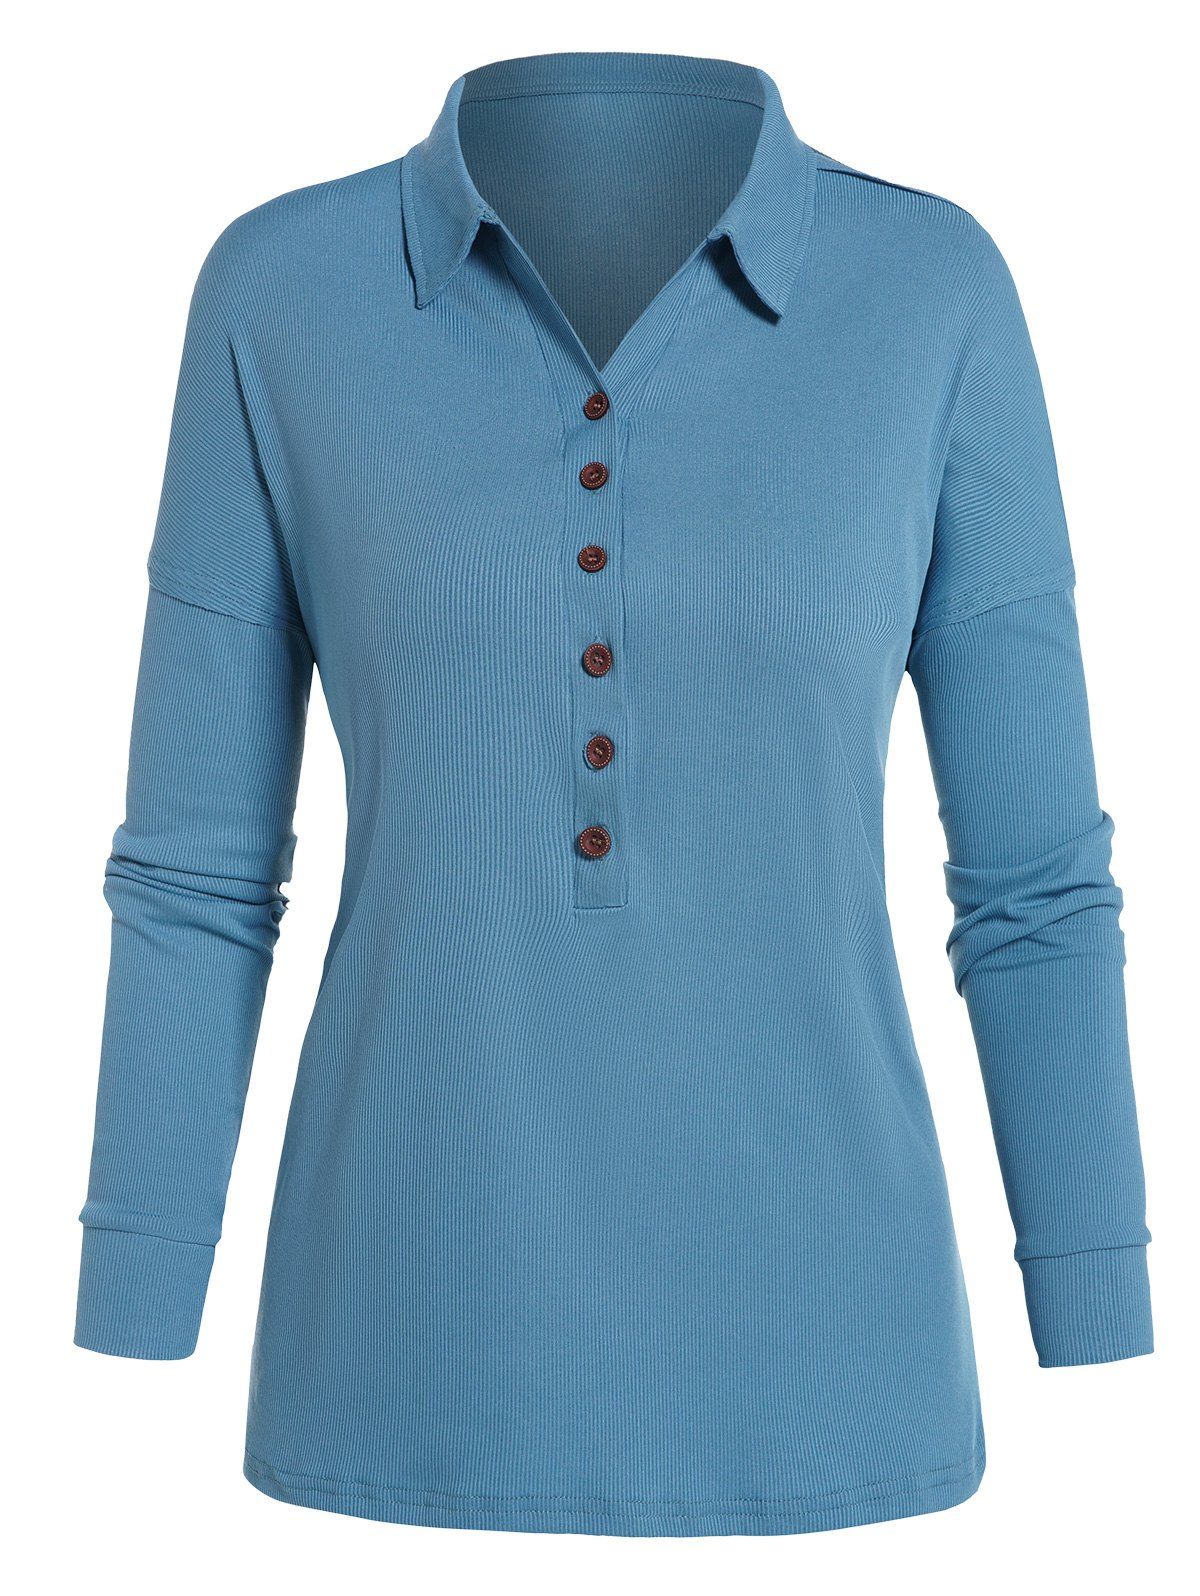 T-shirt Texturé Simple à Demi-Bouton Manches Longues à Col Relevé - Bleu clair XL